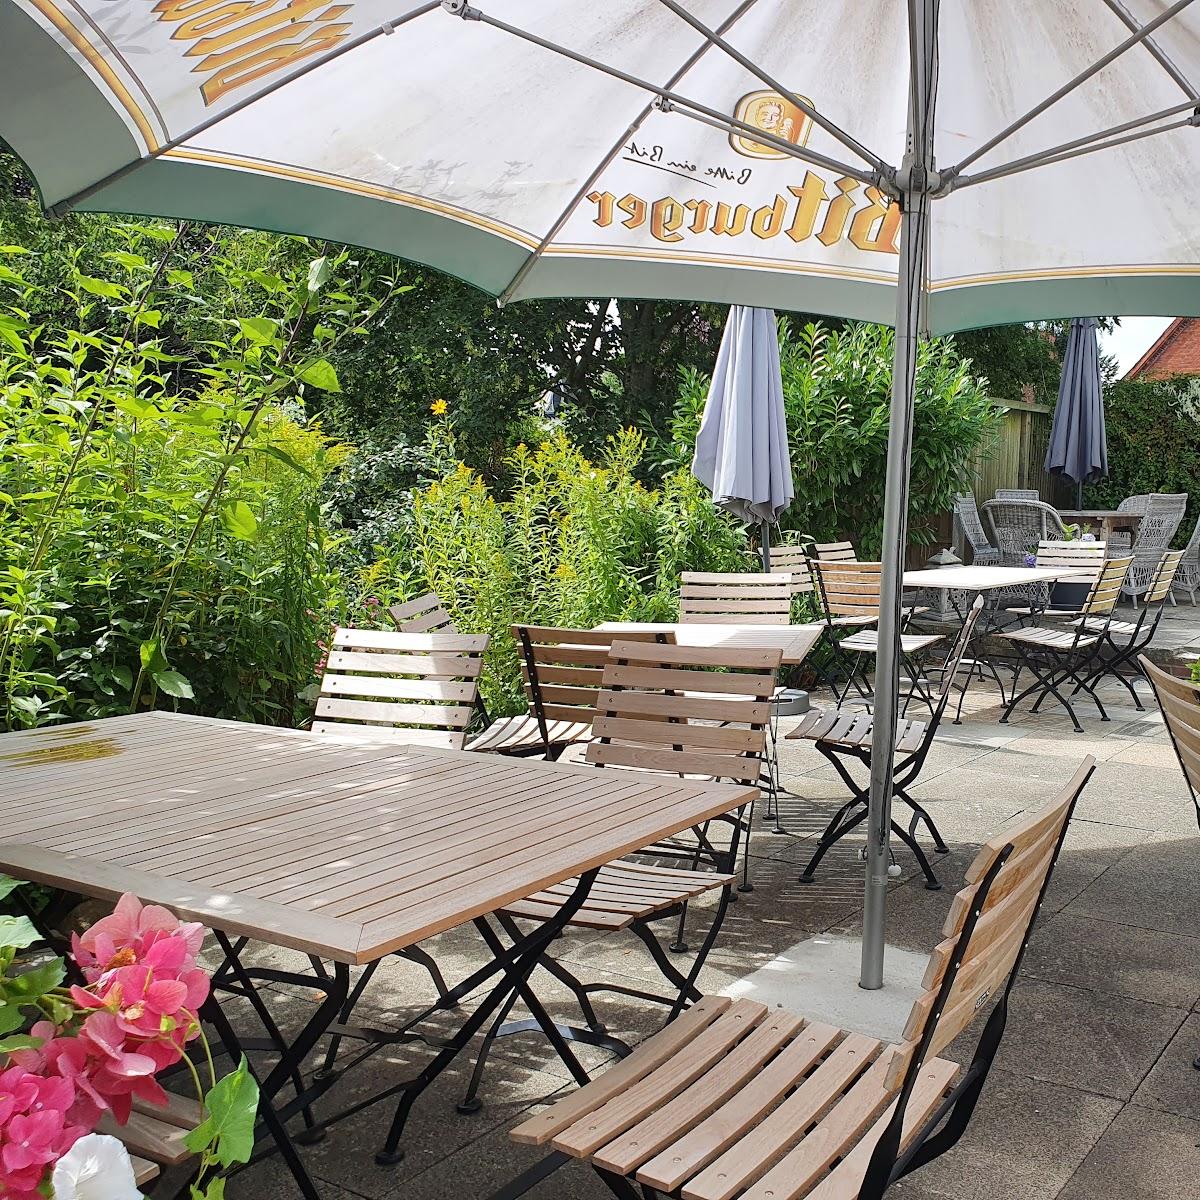 Restaurant "Hebbel Café" in Wesselburen